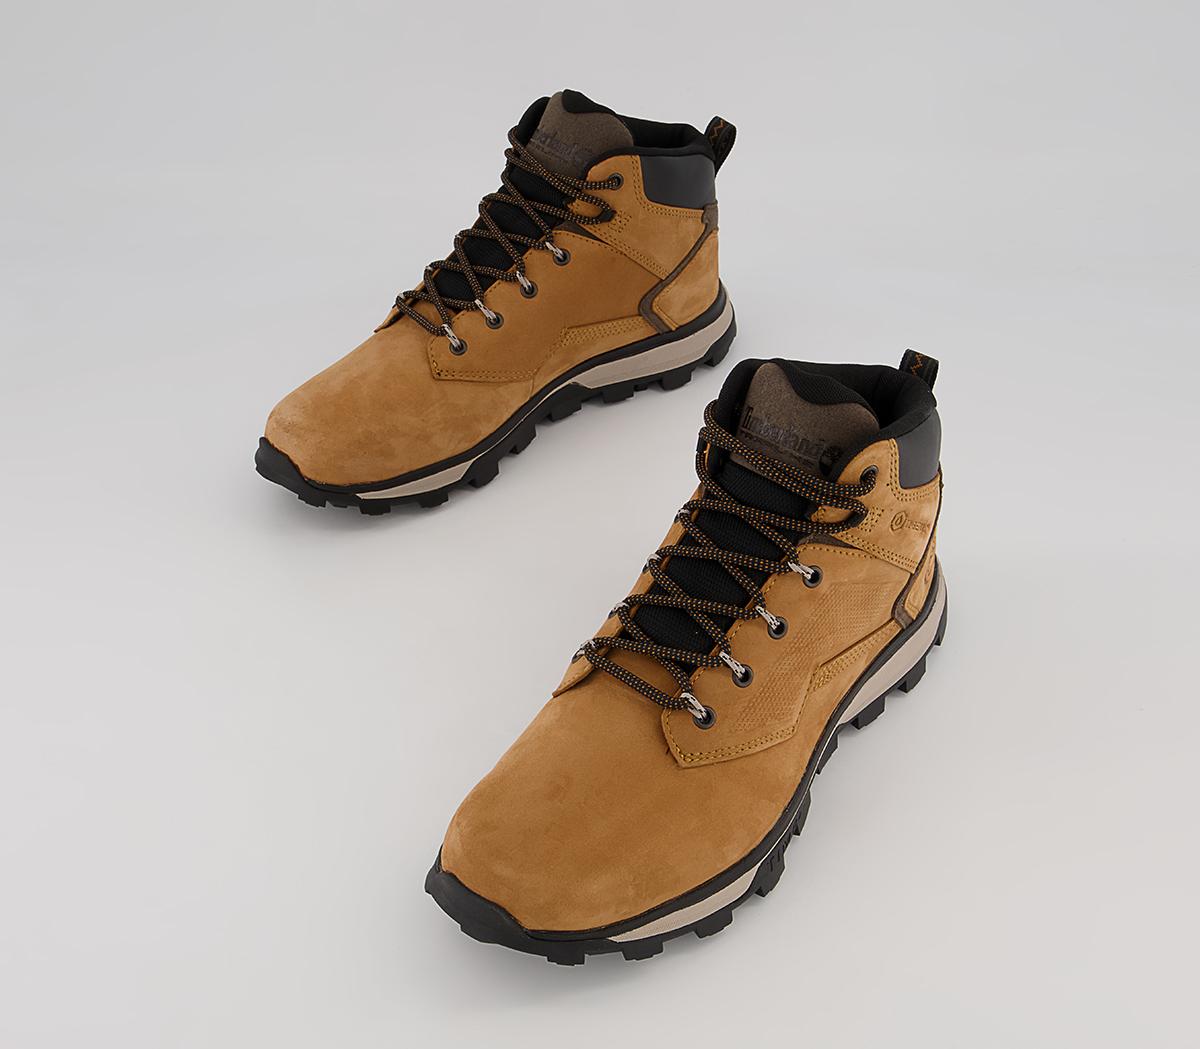 Timberland Treeline Mid Trekker Boots Wheat Nubuck - Men’s Boots